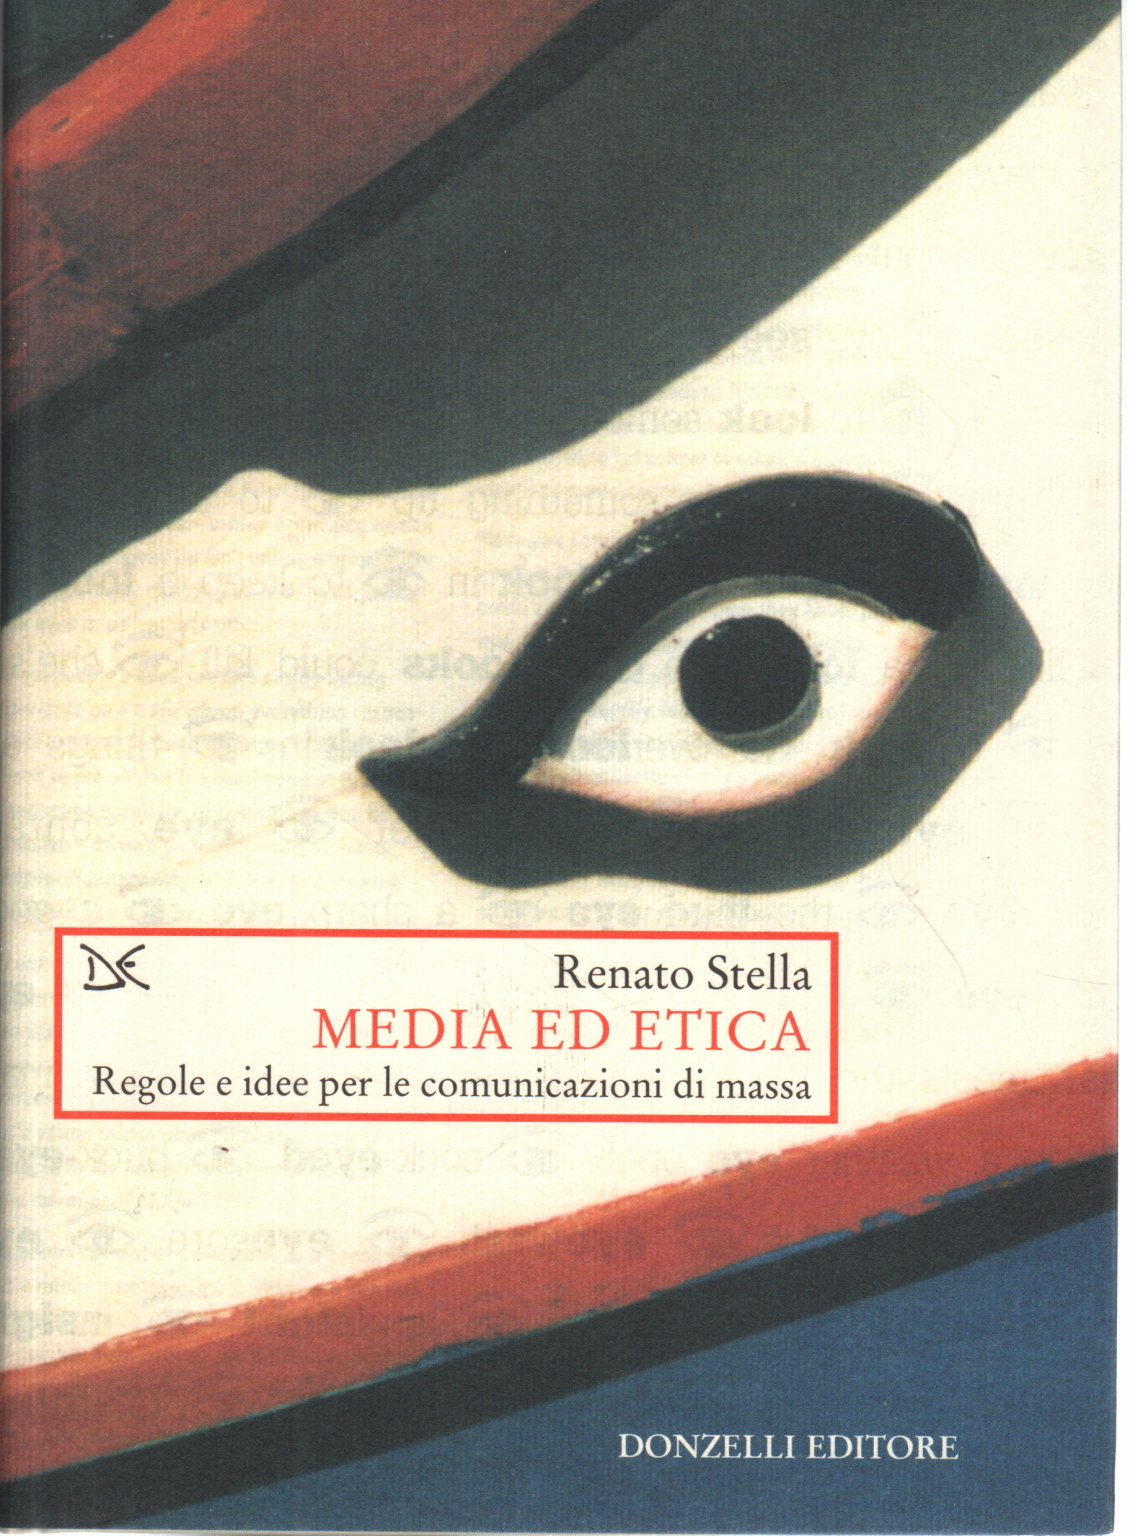 Media ed etica, Renato Stella